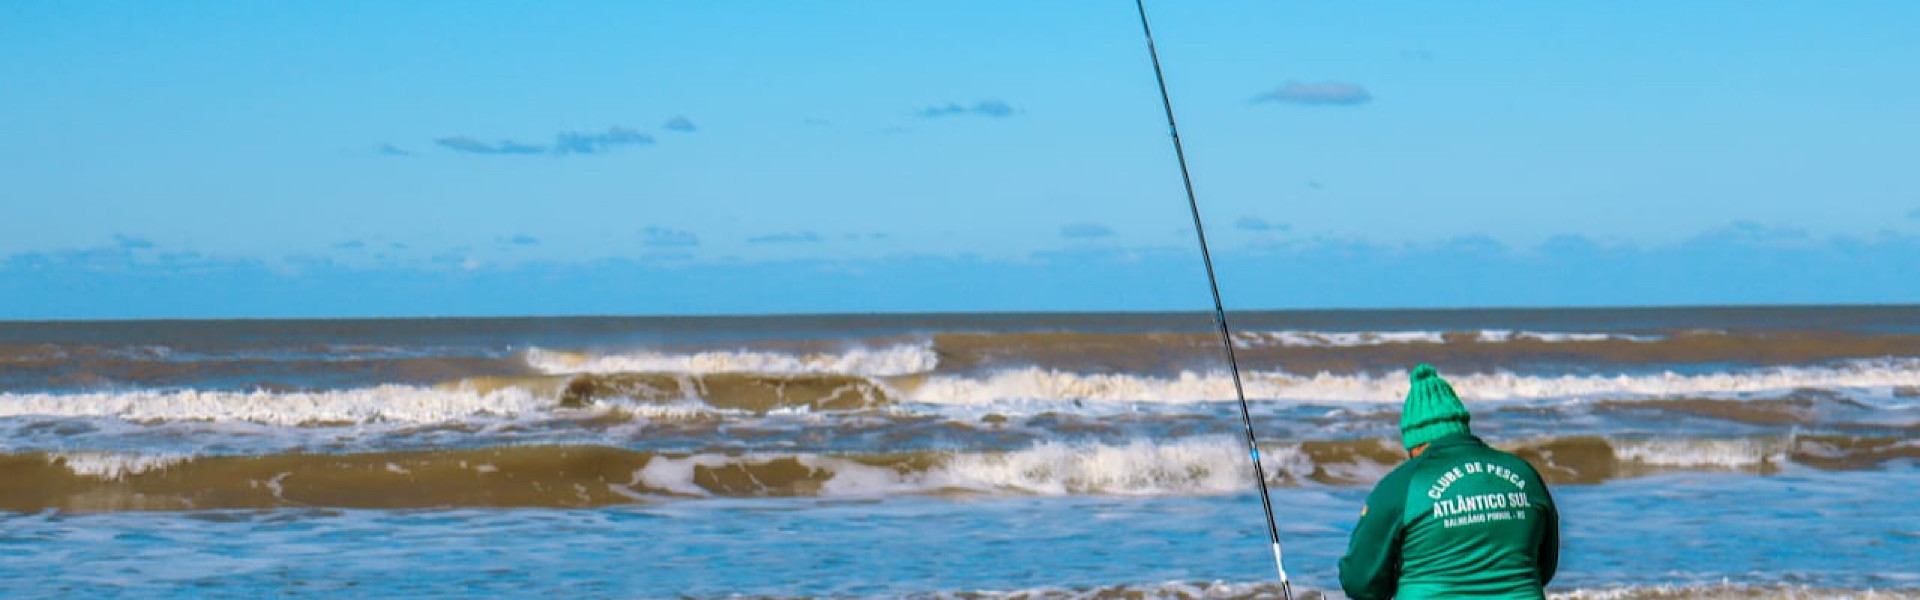 Torneio do 61º aniversário do Clube de Pesca Atlântico Sul acontece final deste mês